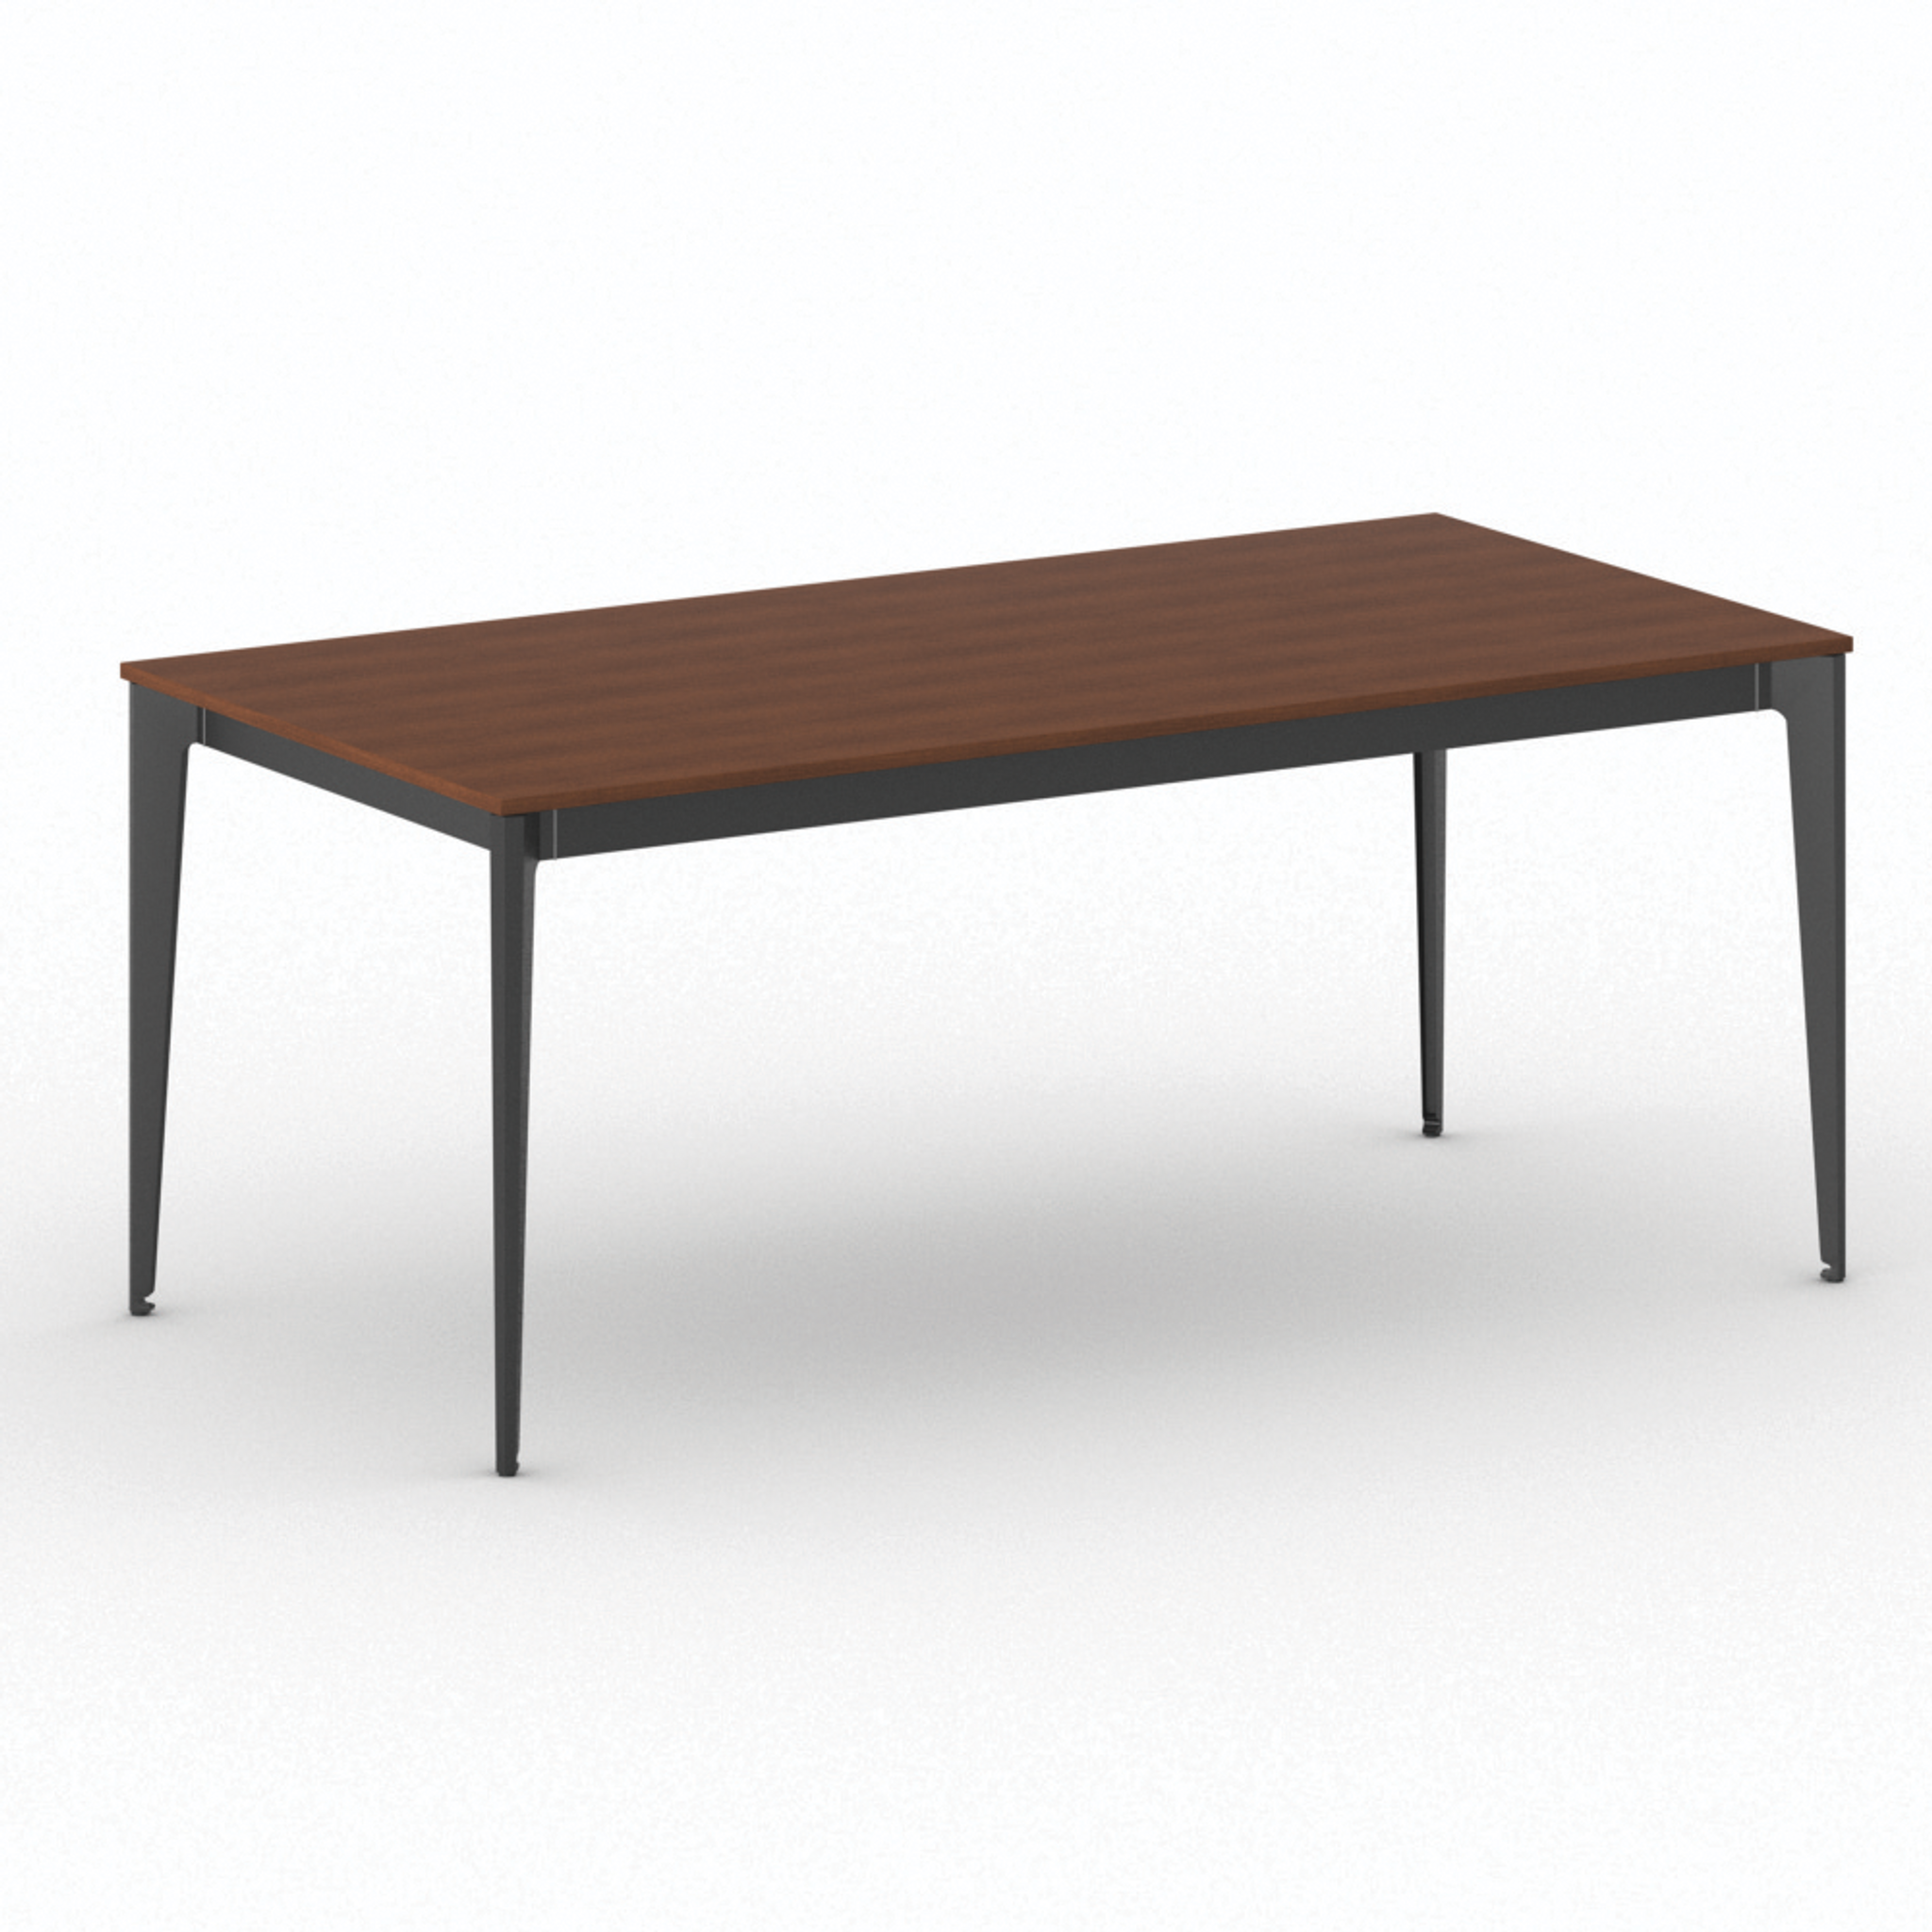 Kancelársky stôl PRIMO ACTION, čierna podnož, 1800 x 900 mm, čerešňa